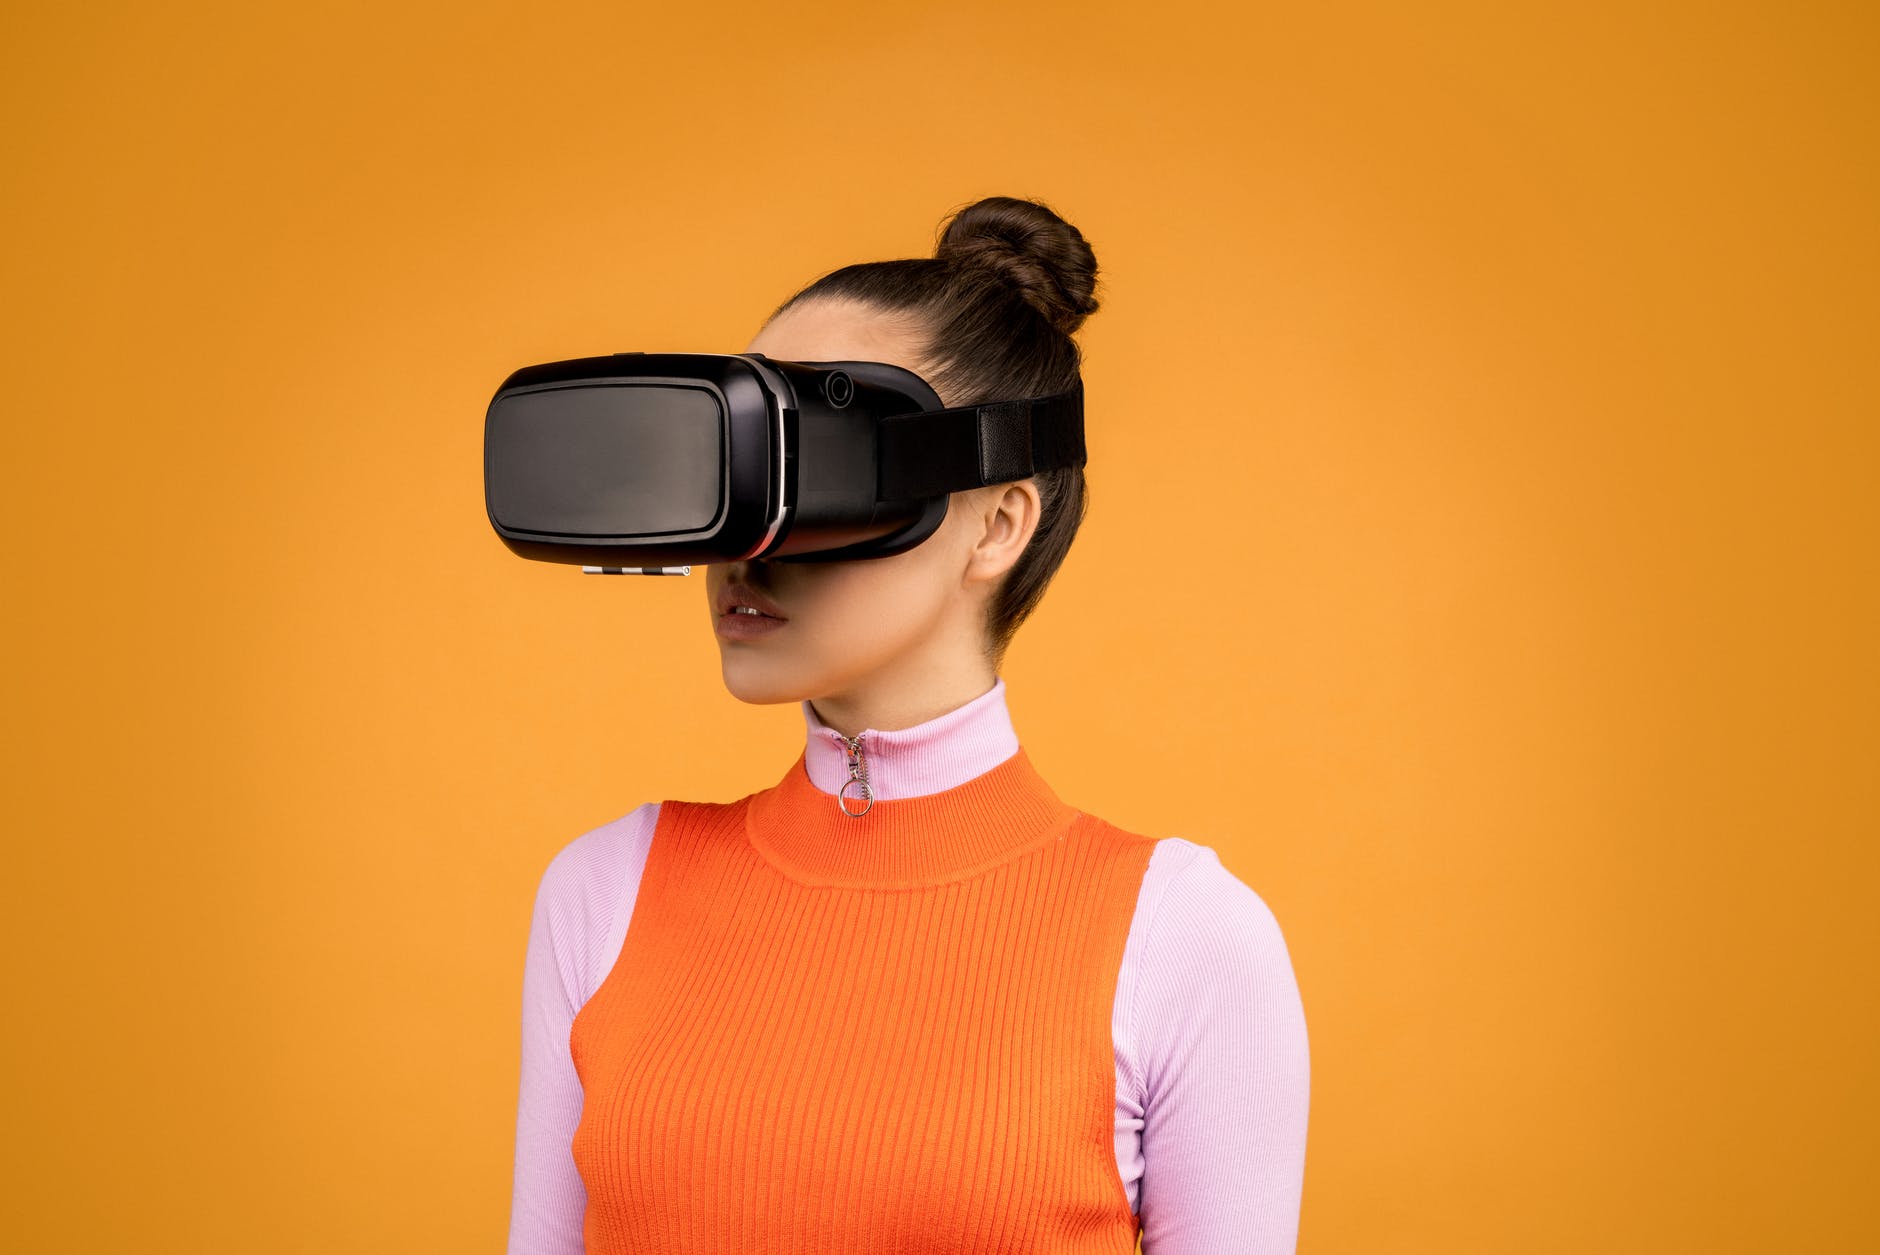 Imagen de una mujer joven utilizando unas gafas de realidad virtual, en esta ocasión no realiza ningún movimiento con las manos.